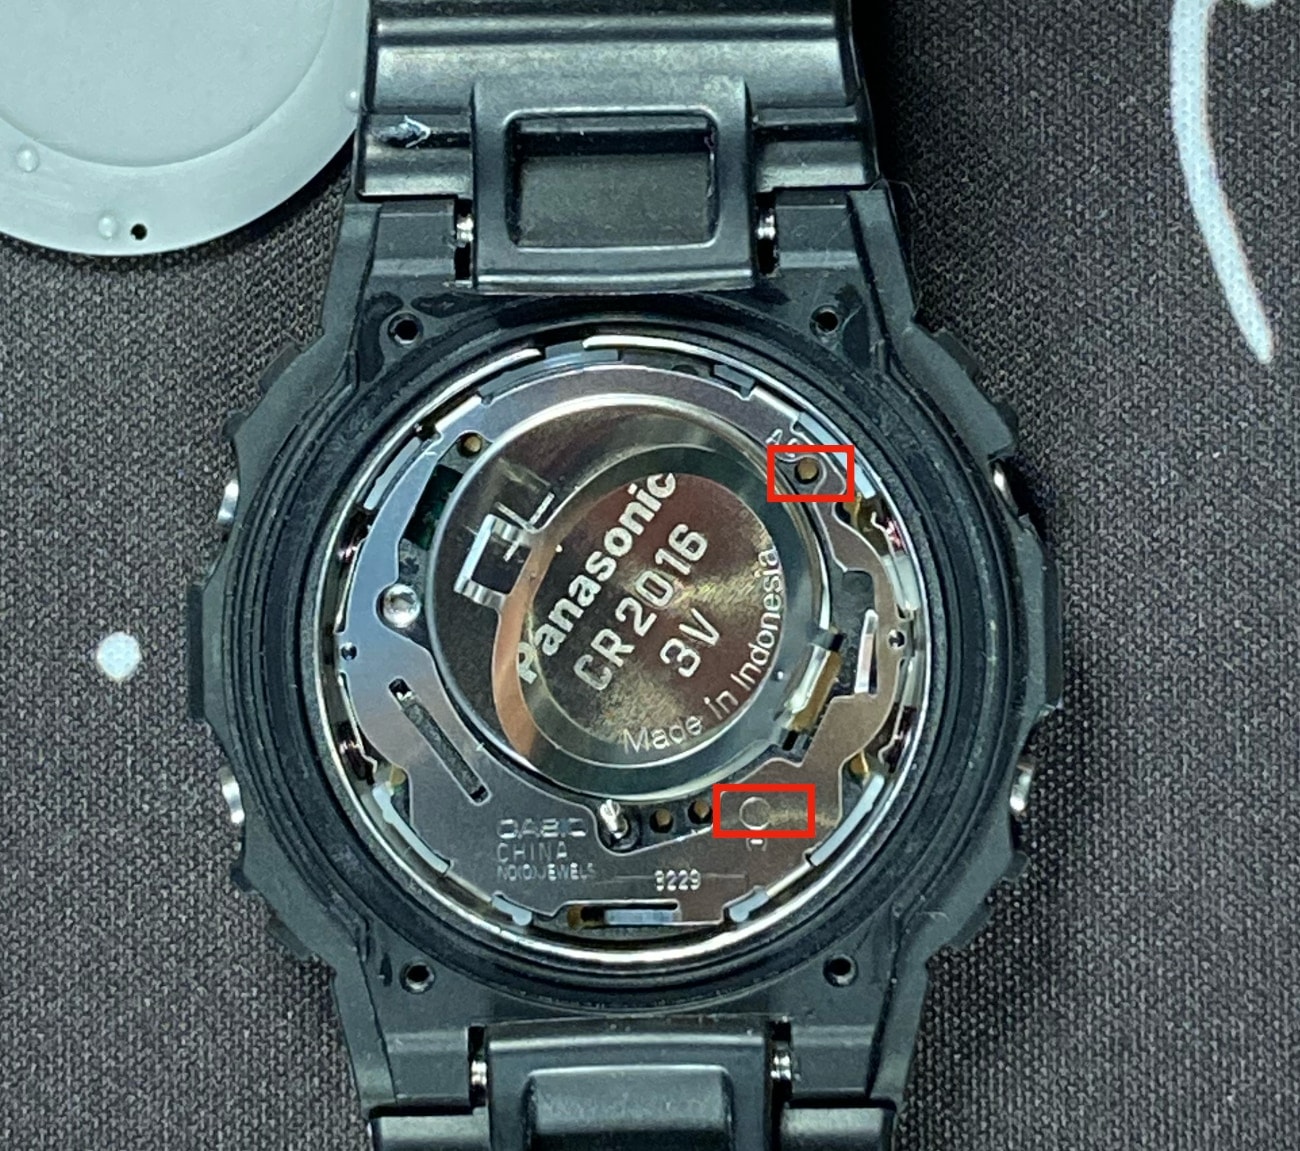 Casio G-Shock DW-5600: Cómo resetear el reloj mediante el contacto AC: colocas una punta de la pinza en el círculo que hay debajo del (-) en la foto y la otra punta en el agujero señalado por la flecha de la placa metálica donde pone AC. Haces contacto durante unos 3 segundos. 